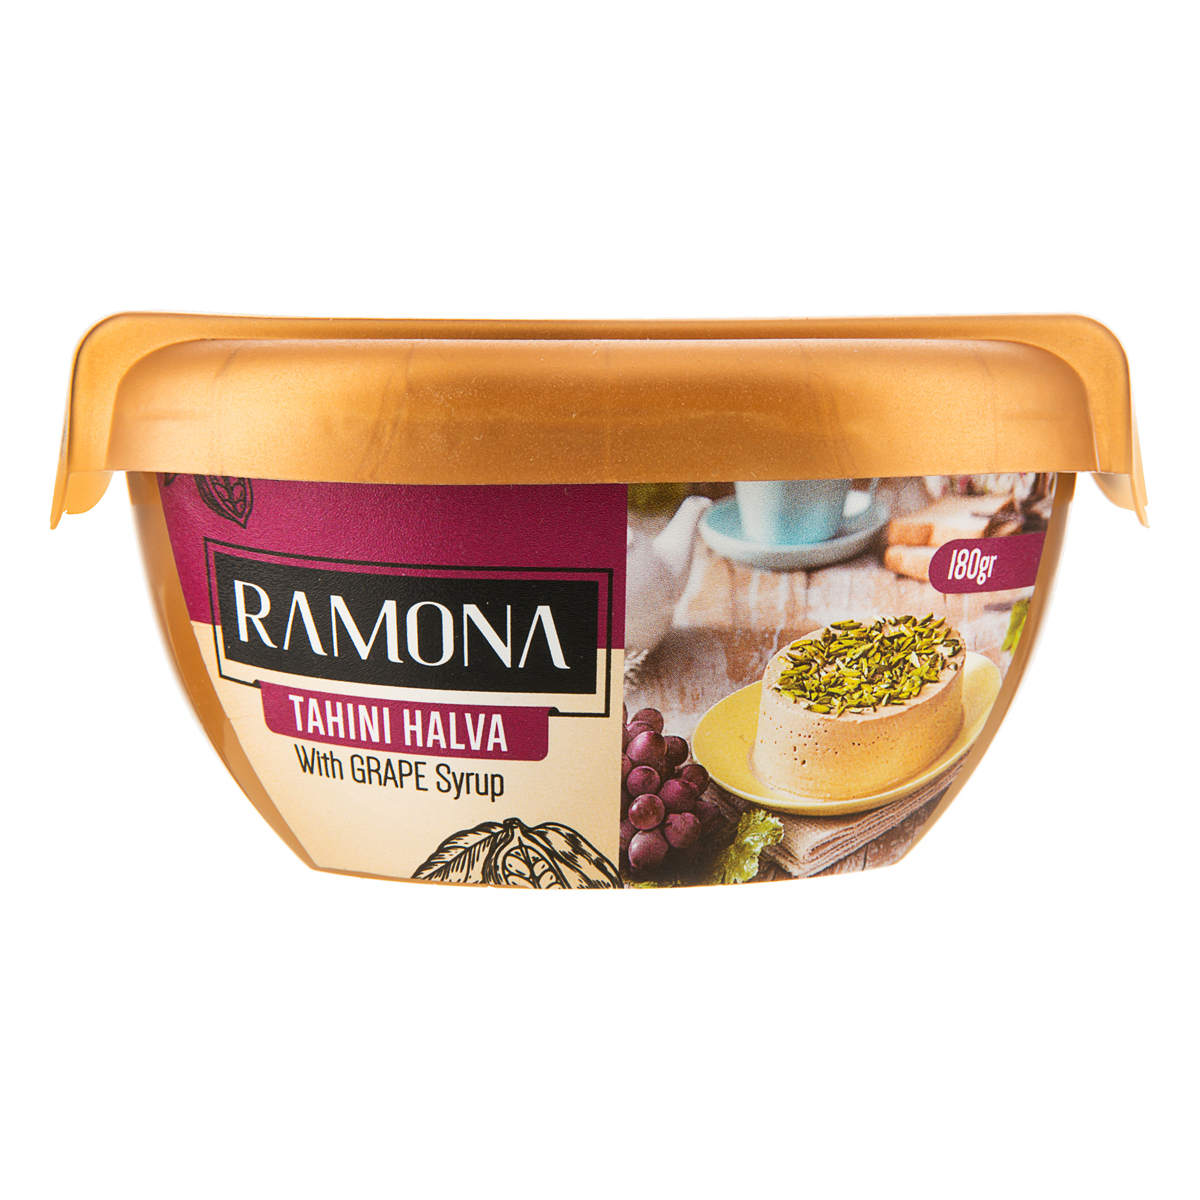  حلوا ارده با شیره انگور رامونا - 360 گرم